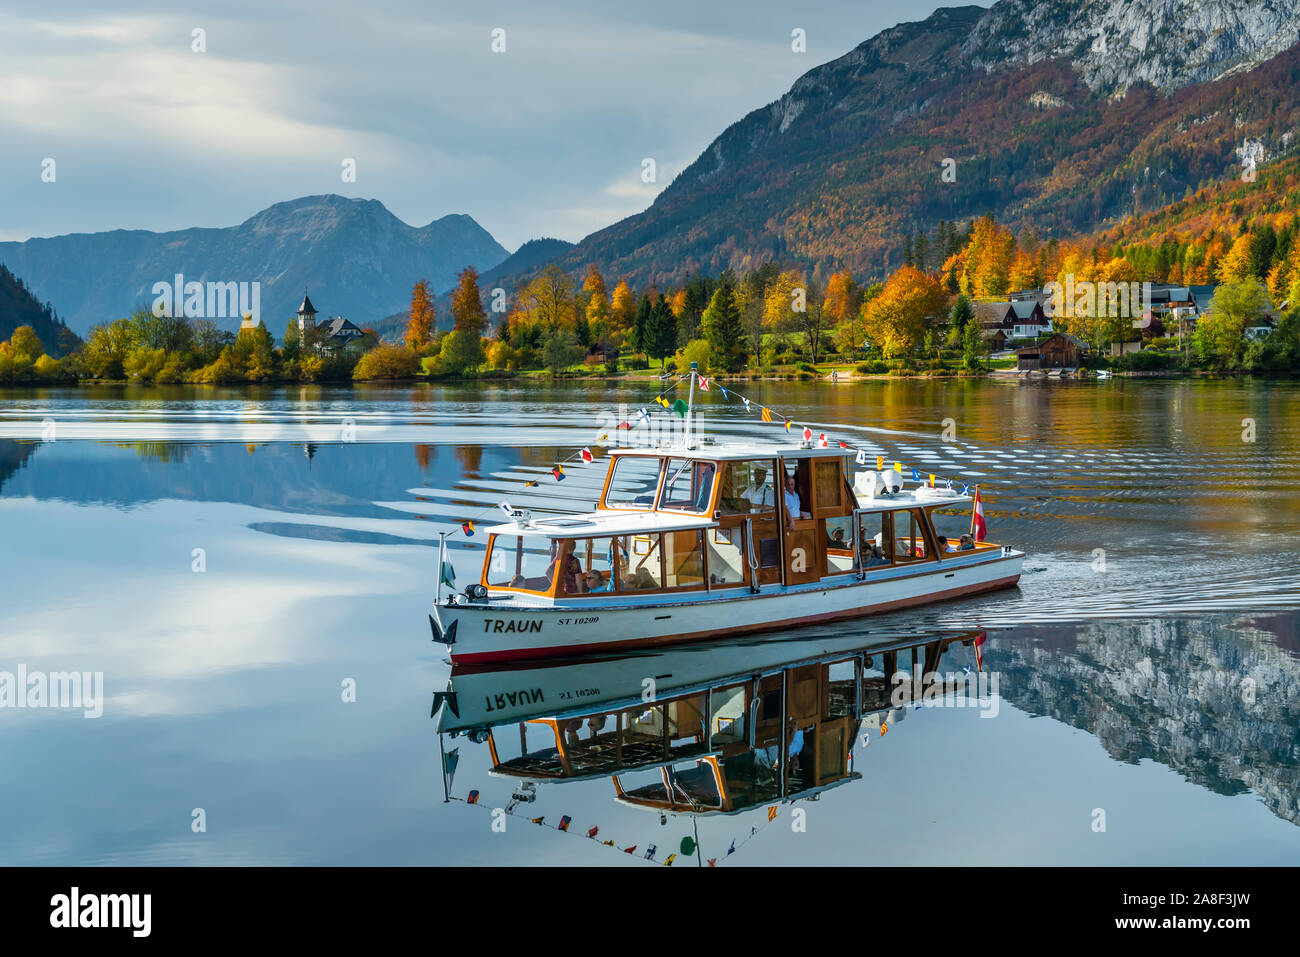 La couleur des feuilles d'automne dans les arbres et le lac calme avec des réflexions à Grundlsee, Autriche, Europe. Banque D'Images